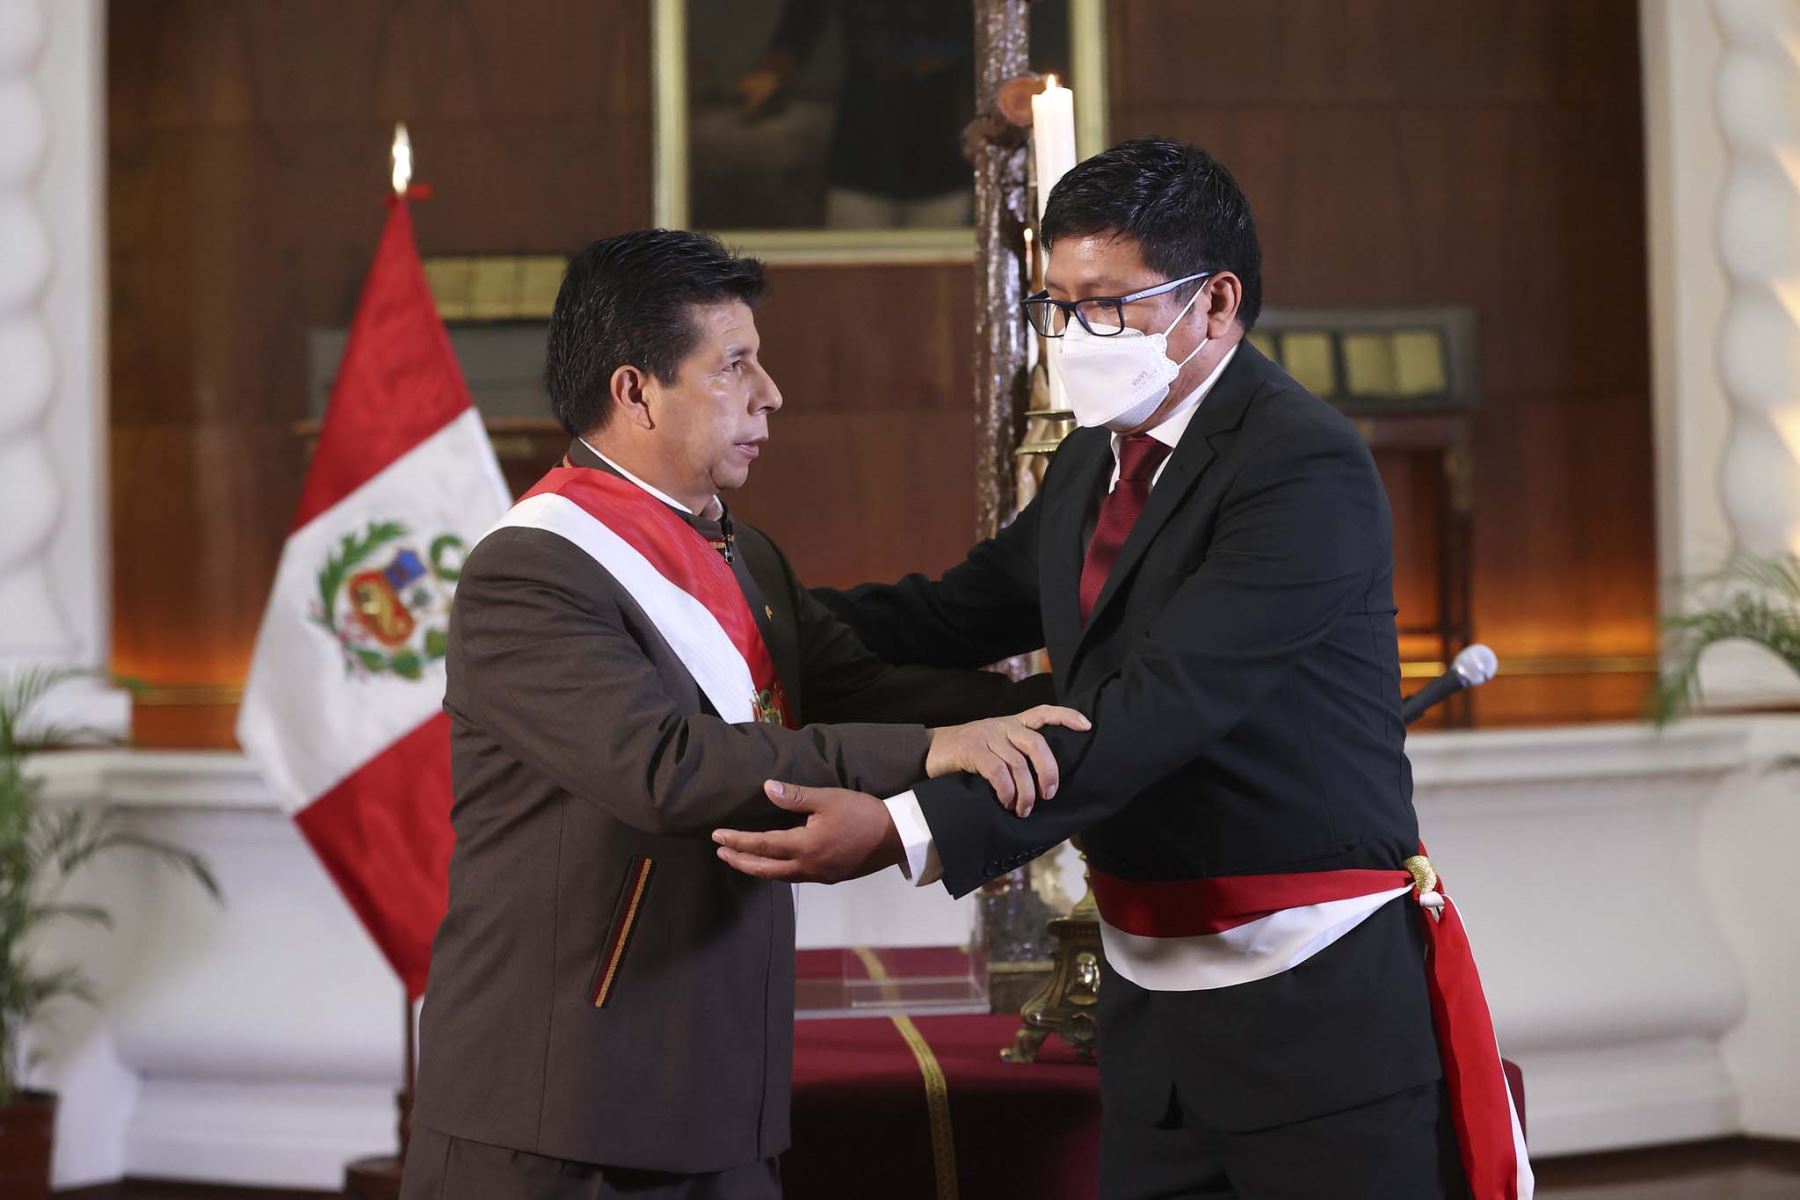 Jorge Antonio López Peña fue designado como ministro de Salud por el presidente Pedro Castillo. Foto: Andina